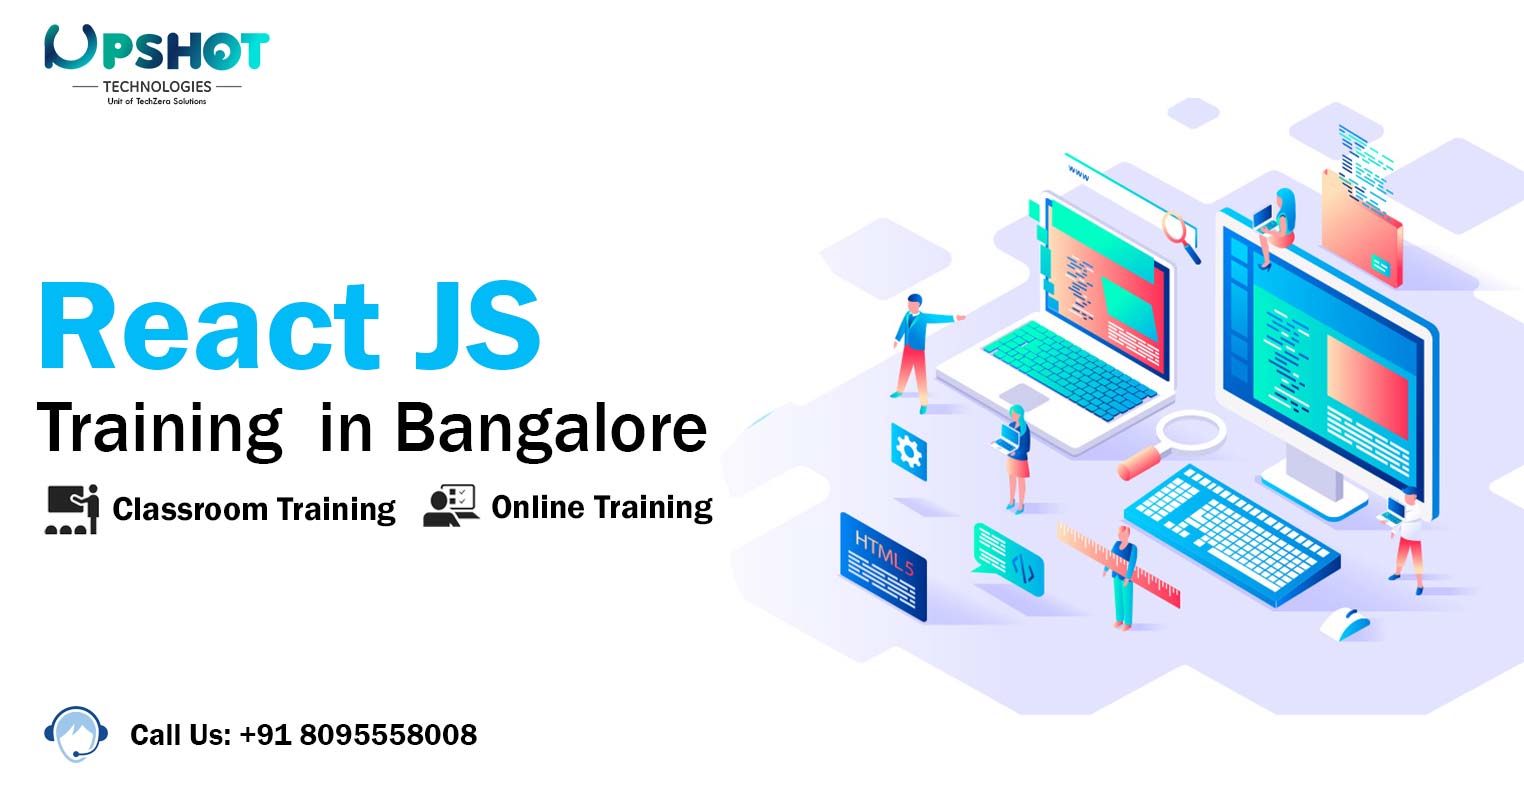 react js Training in bangalore